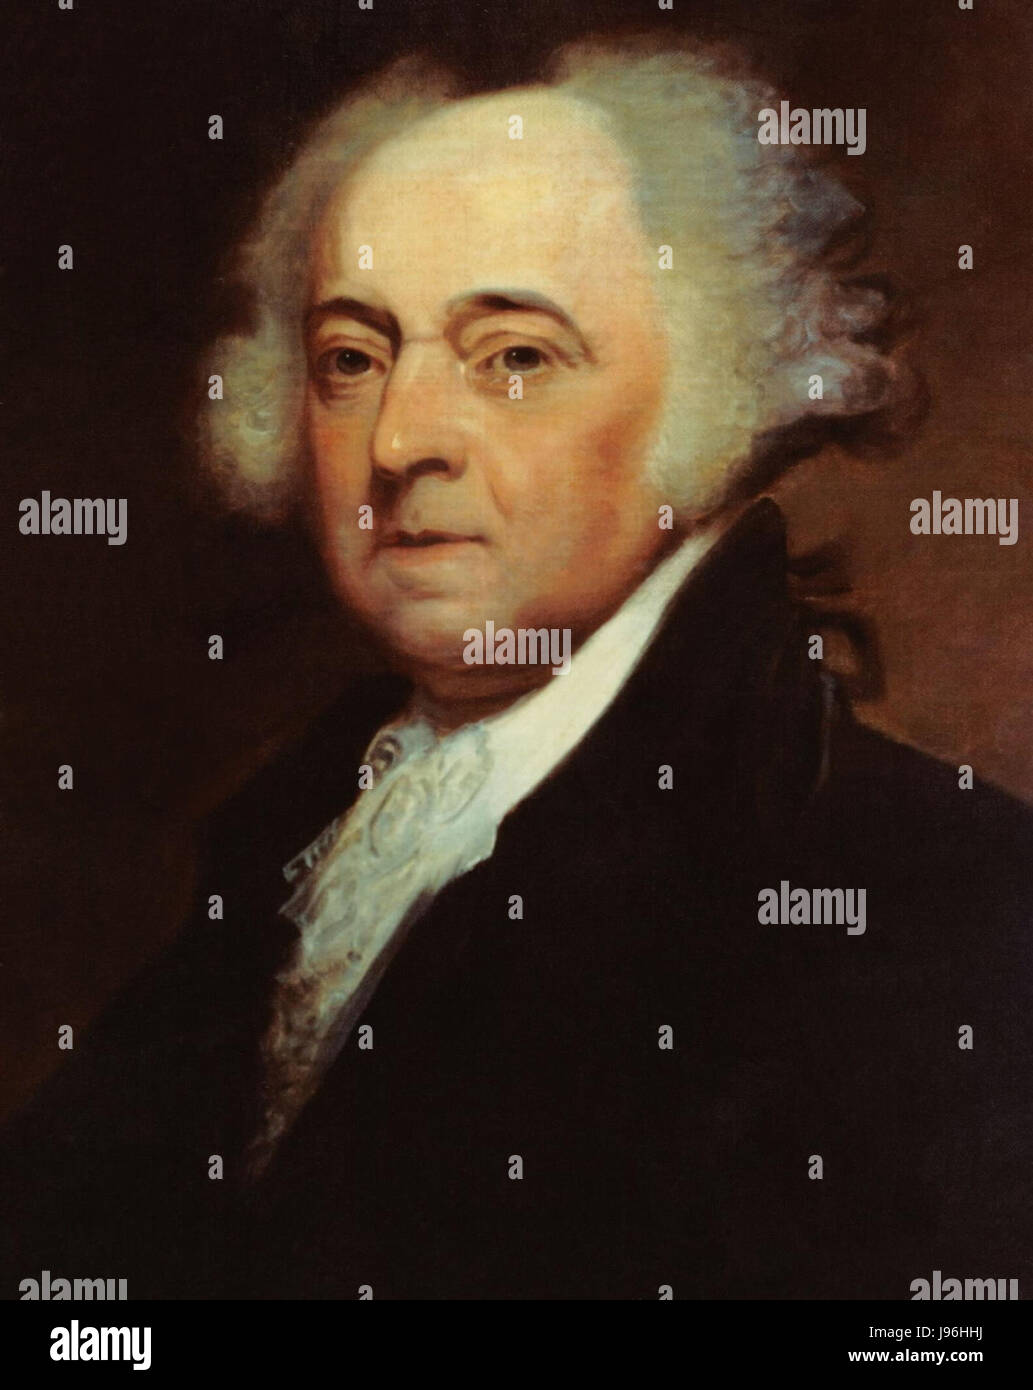 US Navy 031029 N 6236G 001 una pintura del presidente John Adams (1735 1826), segundo presidente de los Estados Unidos, por Asher B. Durand (1767 1845) cultivos Foto de stock